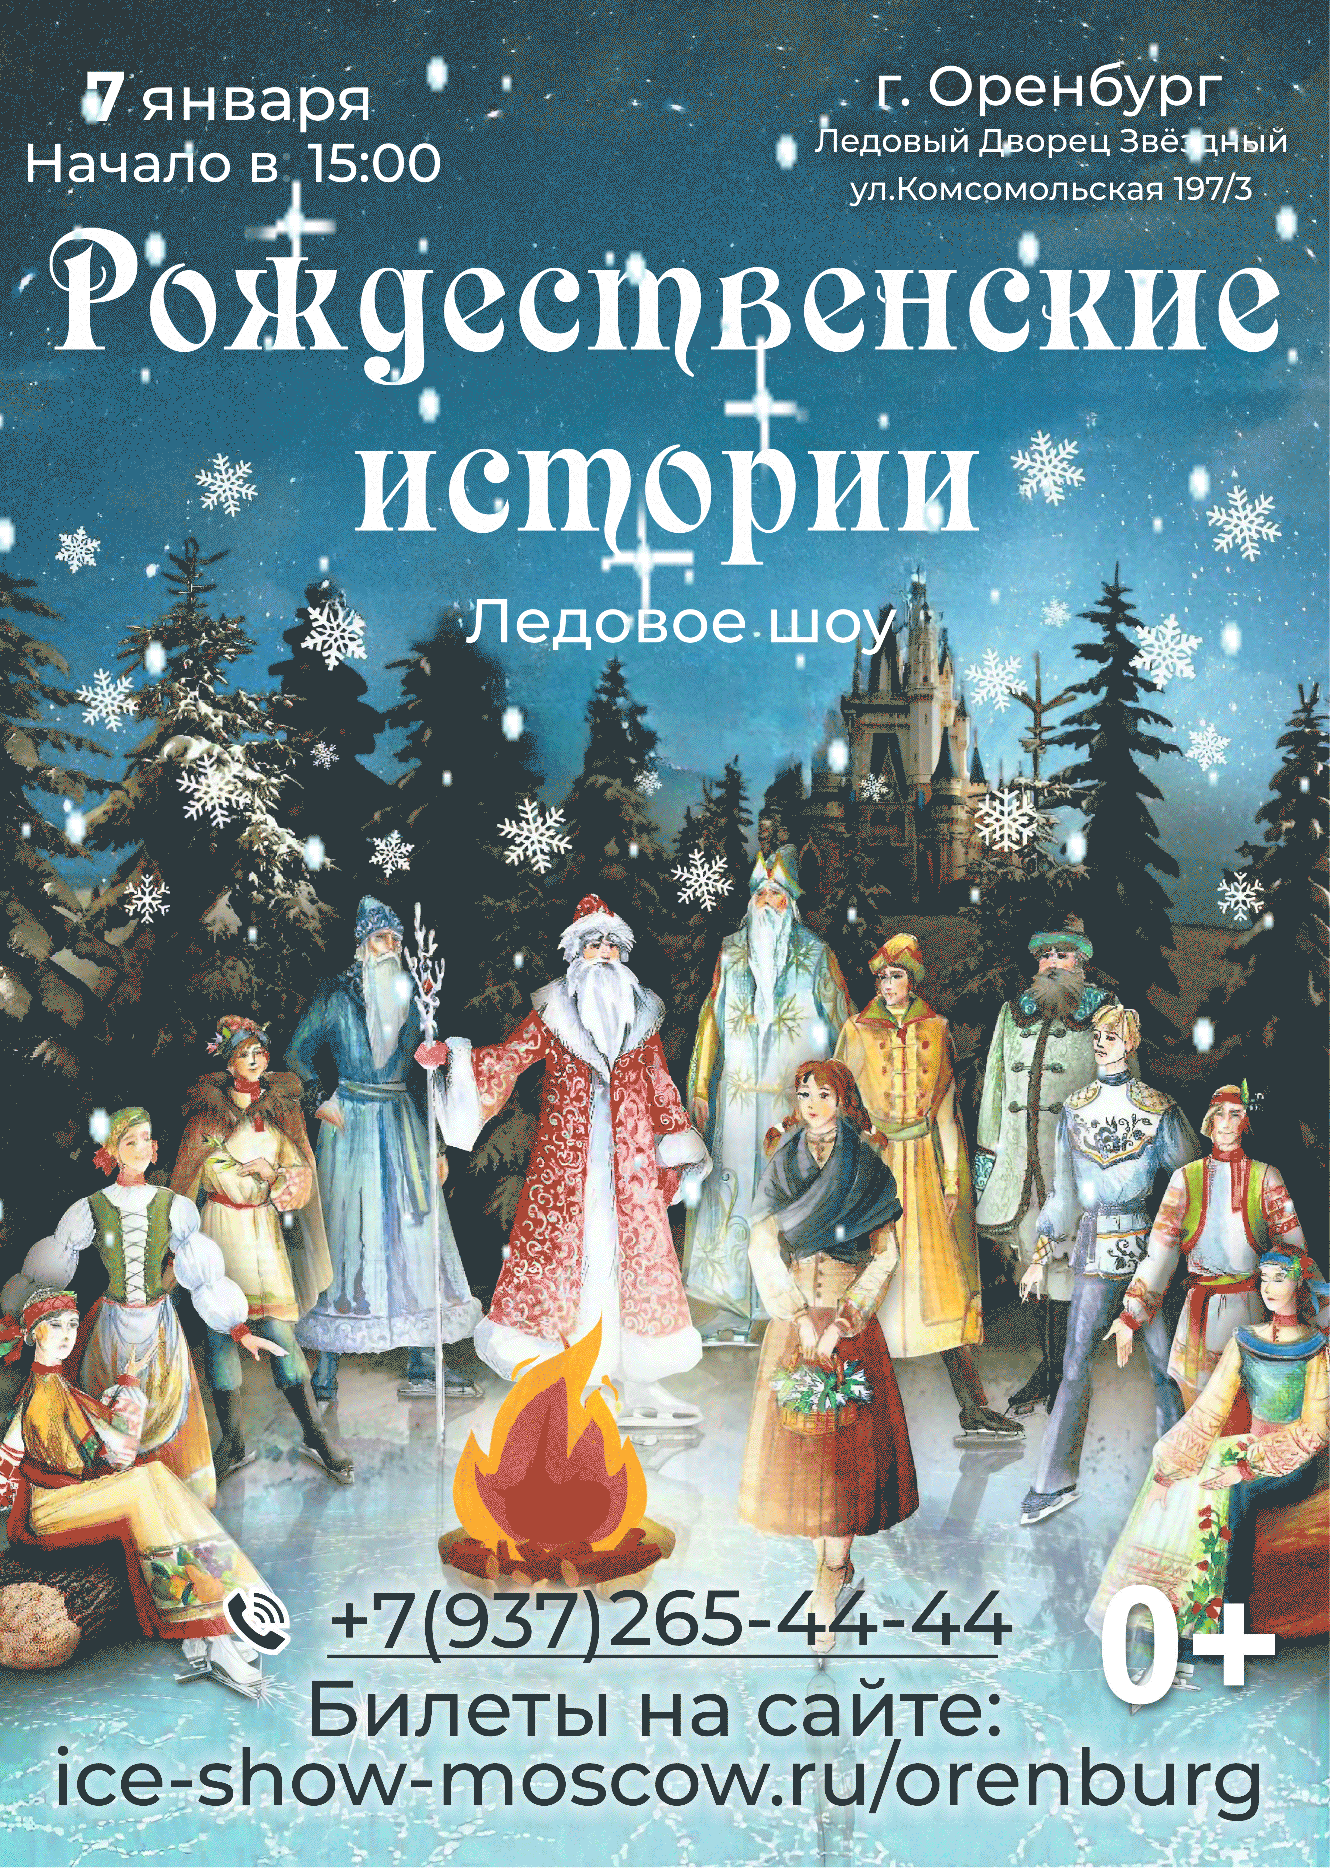 Ледовое шоу "Рождественские истории" 7 января 2024г. в г.Оренбург Ледовый дворец "Звездный".